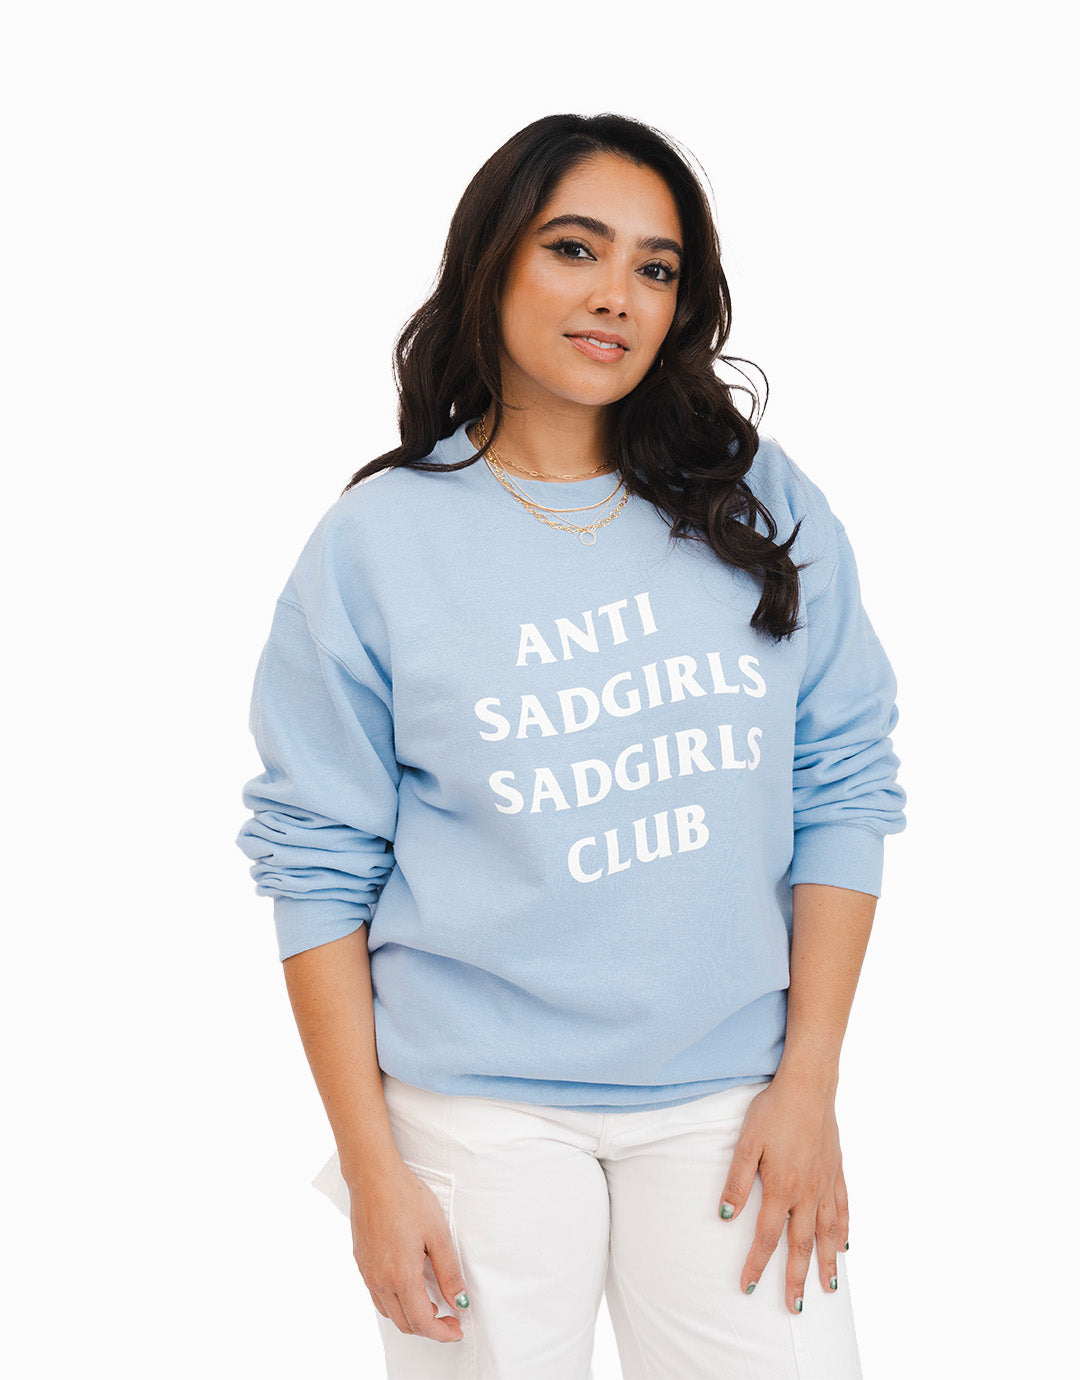 Anti Sad Girls Sad Girls Club Sweatshirt